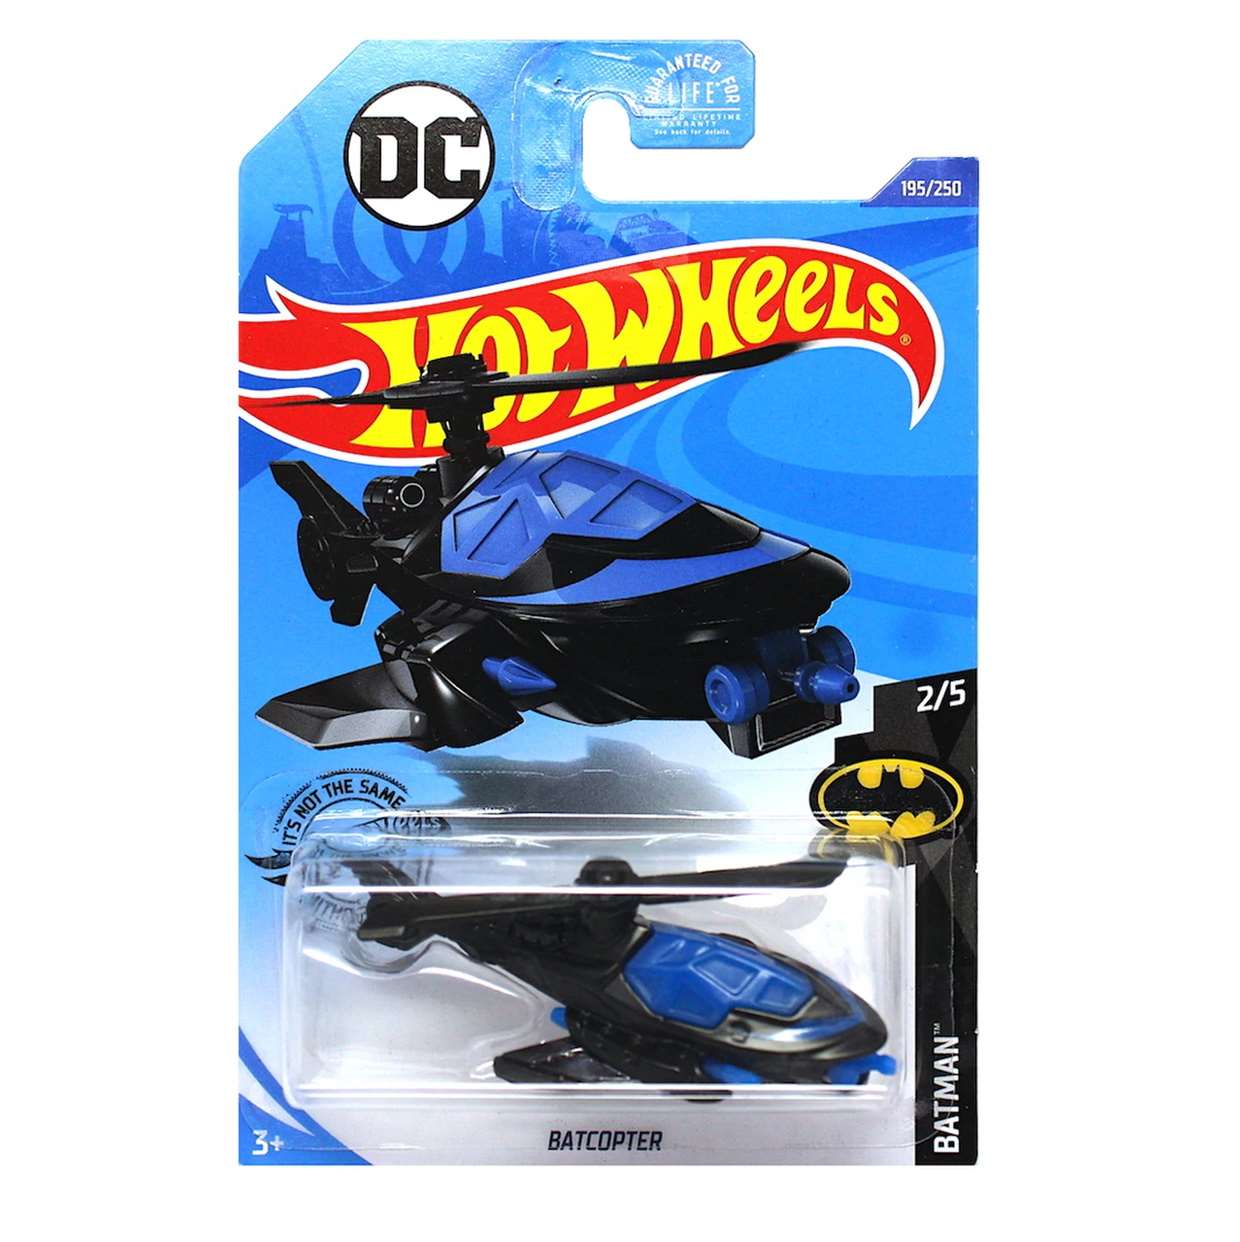 Batcopter G2n17 Batman Dc Comics 2/5 Hot Wheels